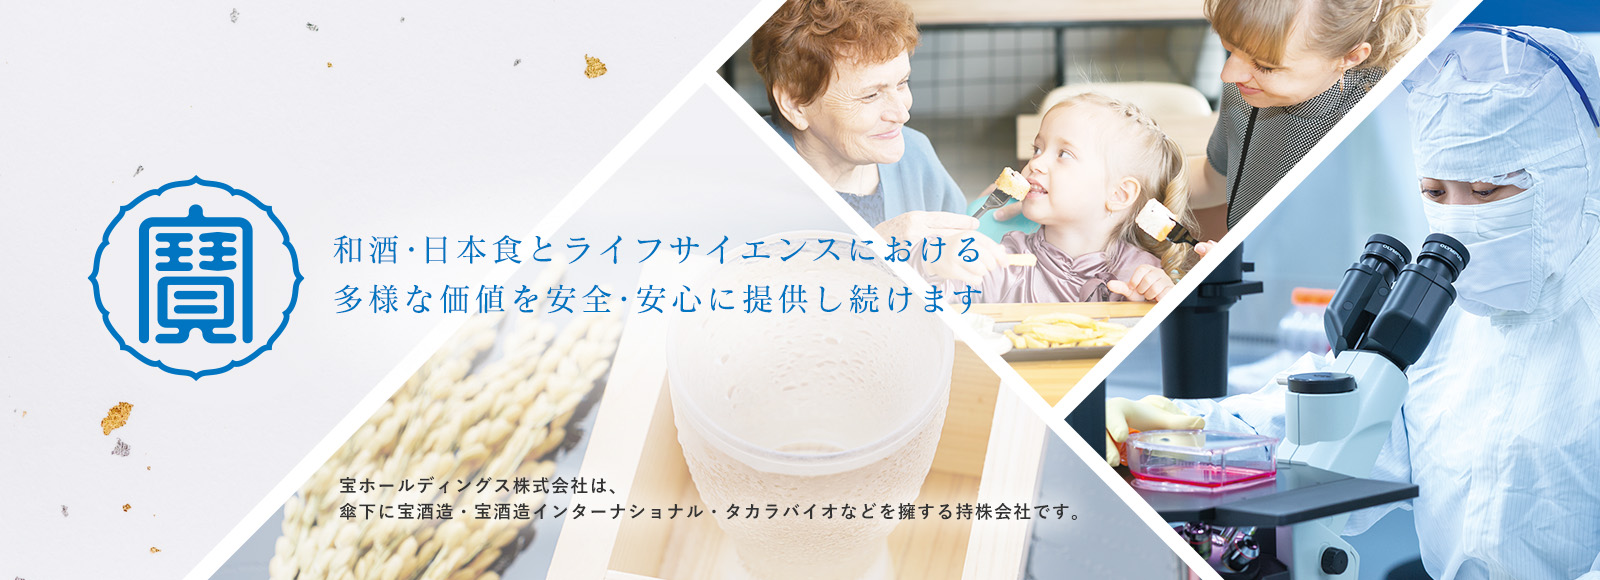 和酒・日本食とライフサイエンスにおける多様な価値を安全・安心に提供し続けます